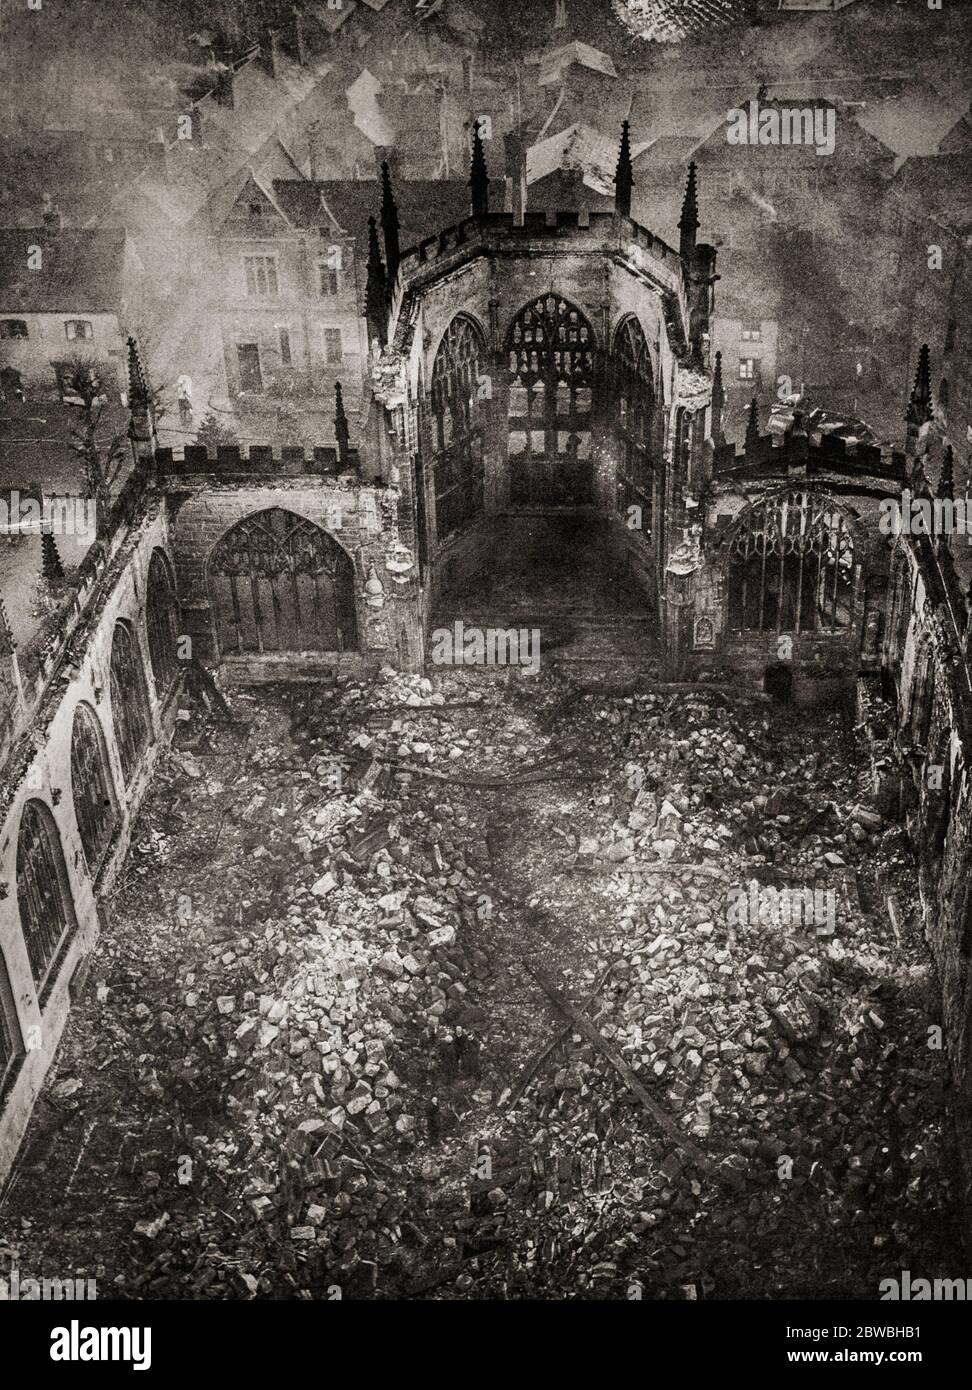 Die Ruinen der Coventry Cathedral (dem Heiligen Michael geweiht), nach dem Coventry Blitz, einer Reihe von Bombenangriffen, die auf die englische Stadt Coventry stattfanden. Die Stadt wurde während des Zweiten Weltkriegs mehrmals von der deutschen Luftwaffe bombardiert. Die verheerendsten dieser Angriffe ereigneten sich am Abend des 14. November 1940, als die Kathedrale getroffen wurde. Stockfoto